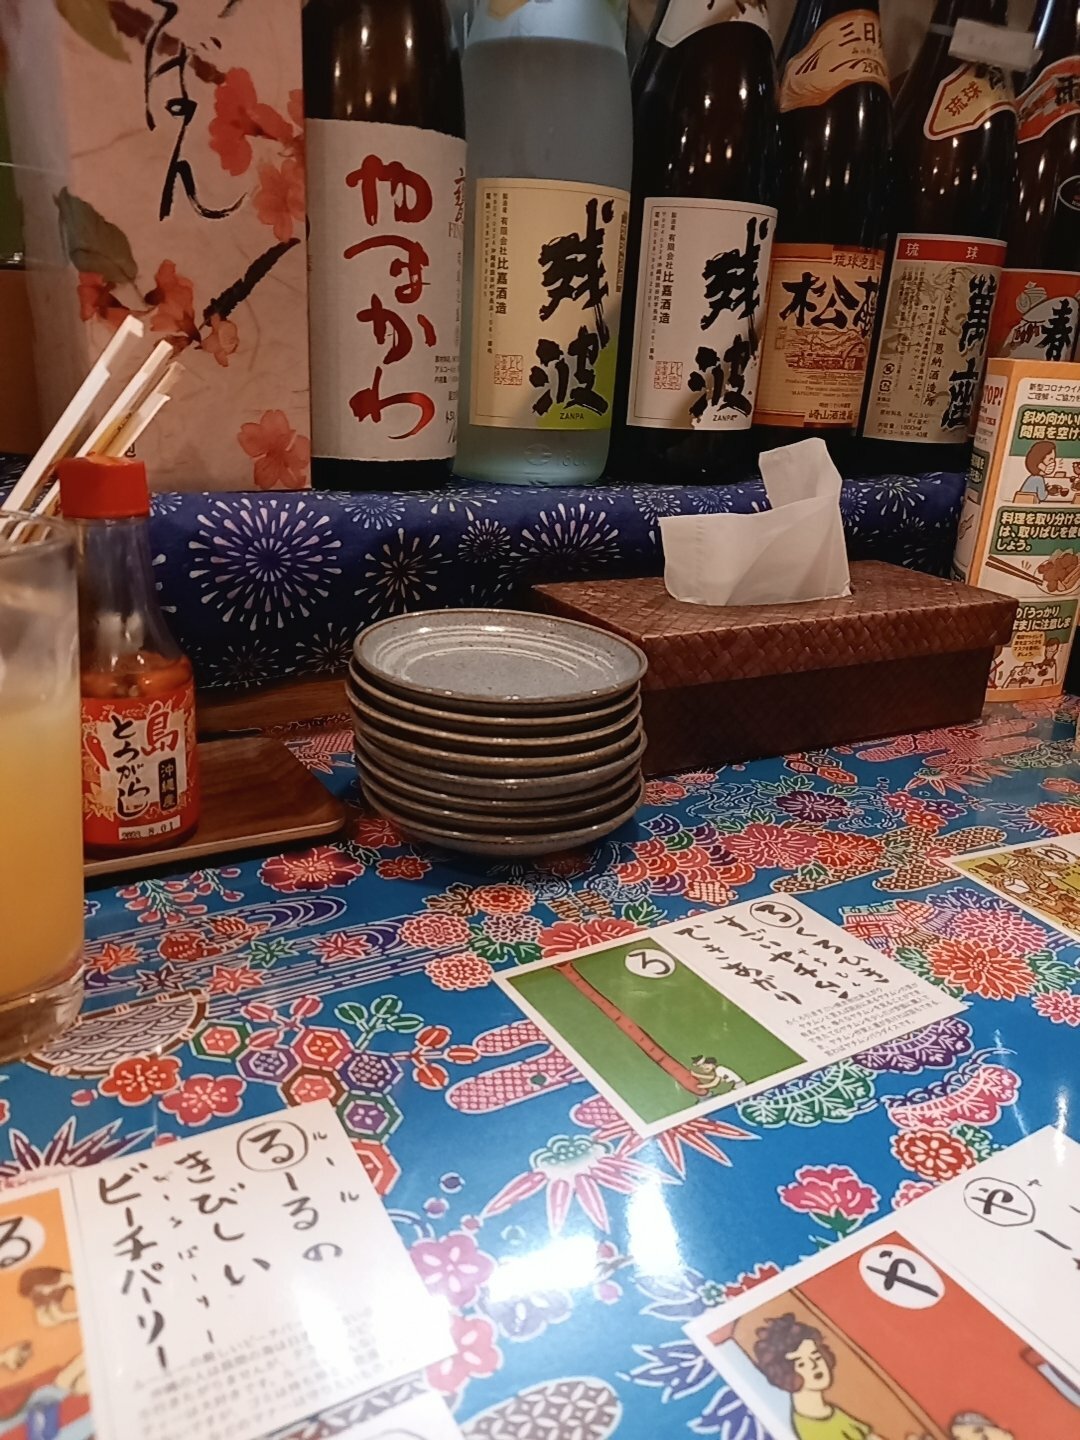 カウンターには泡盛の瓶が並んでいます。カウンターテーブルで沖縄方言を学びながら料理を待ちます